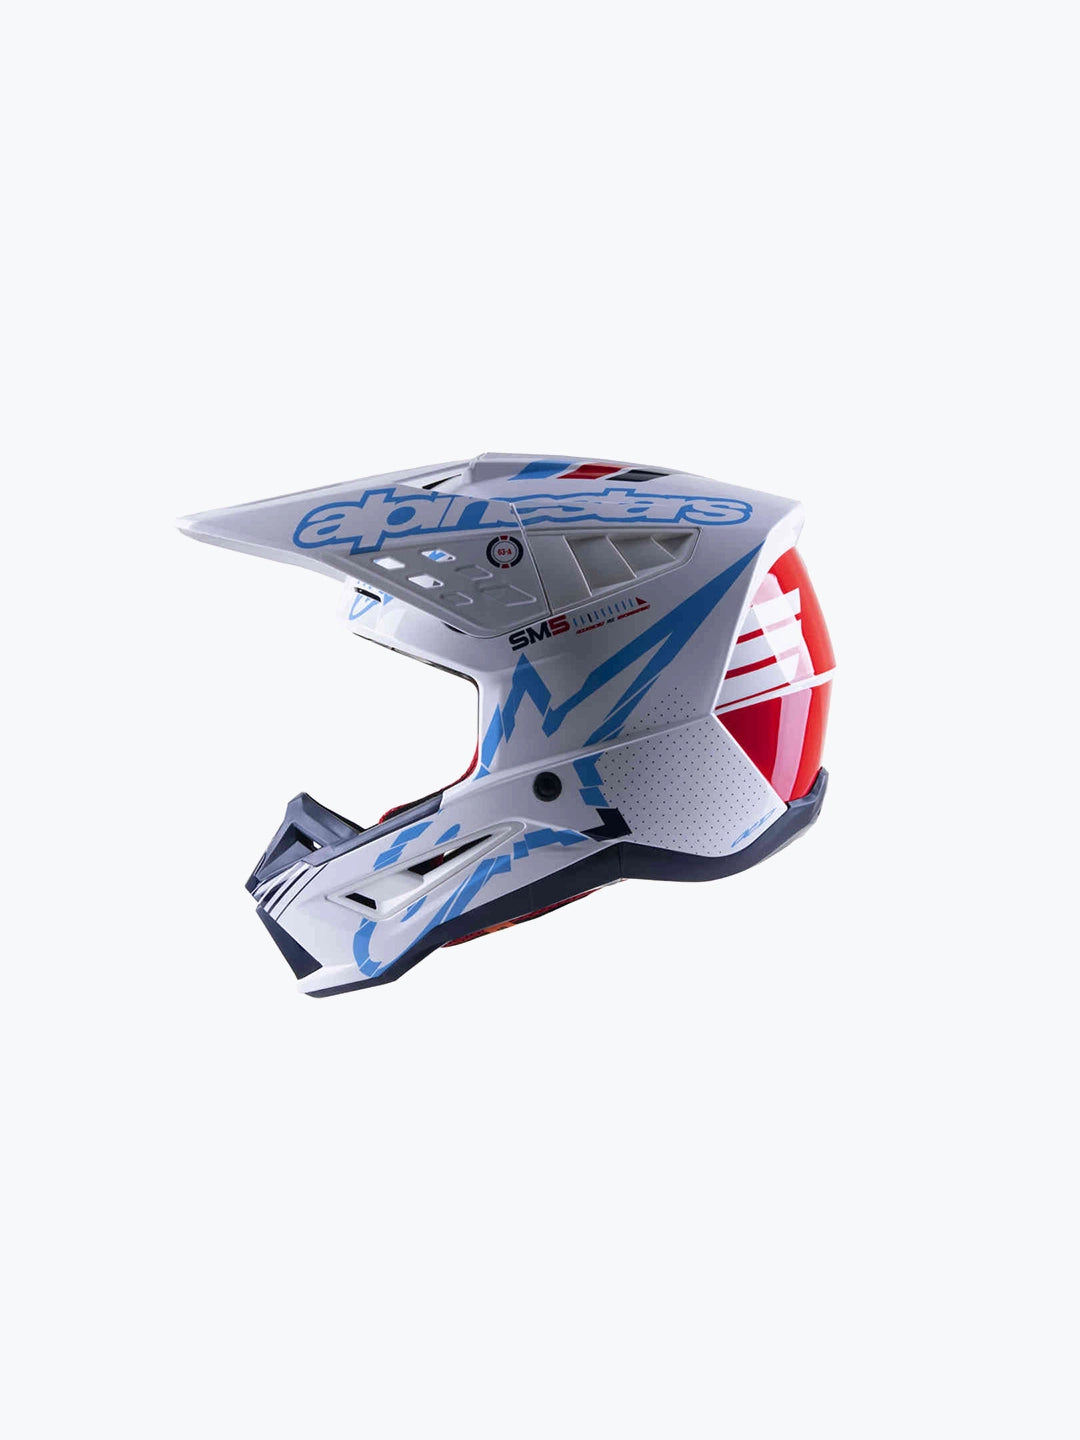 Alpinestars S-M5 Action Motocross Helmet White/Red/Blue